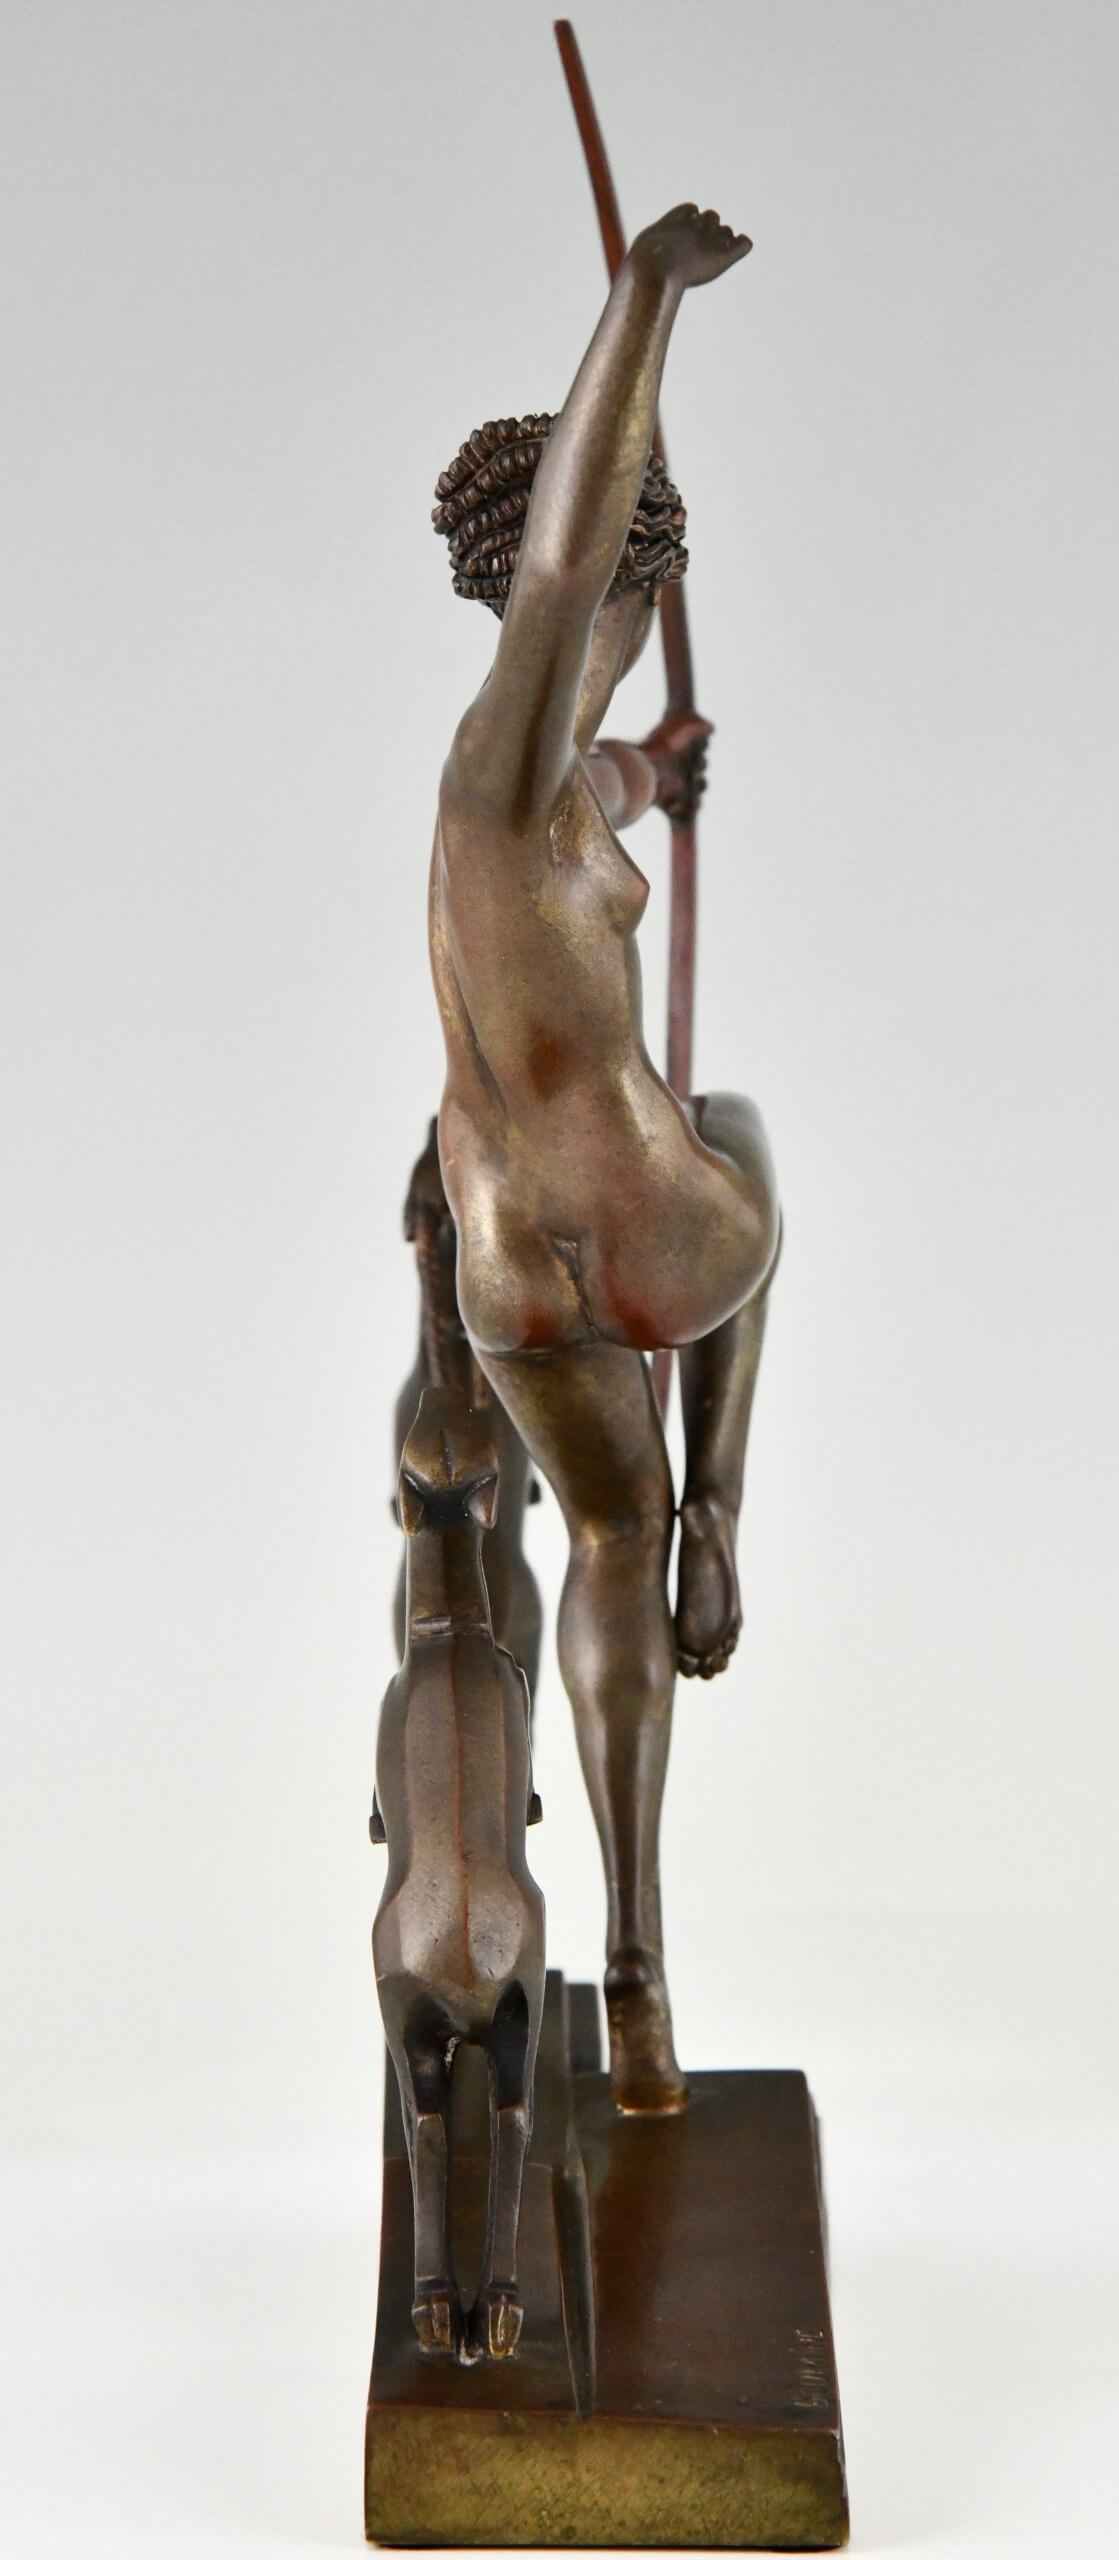 Art Deco bronzen sculptuur Diana met reeën